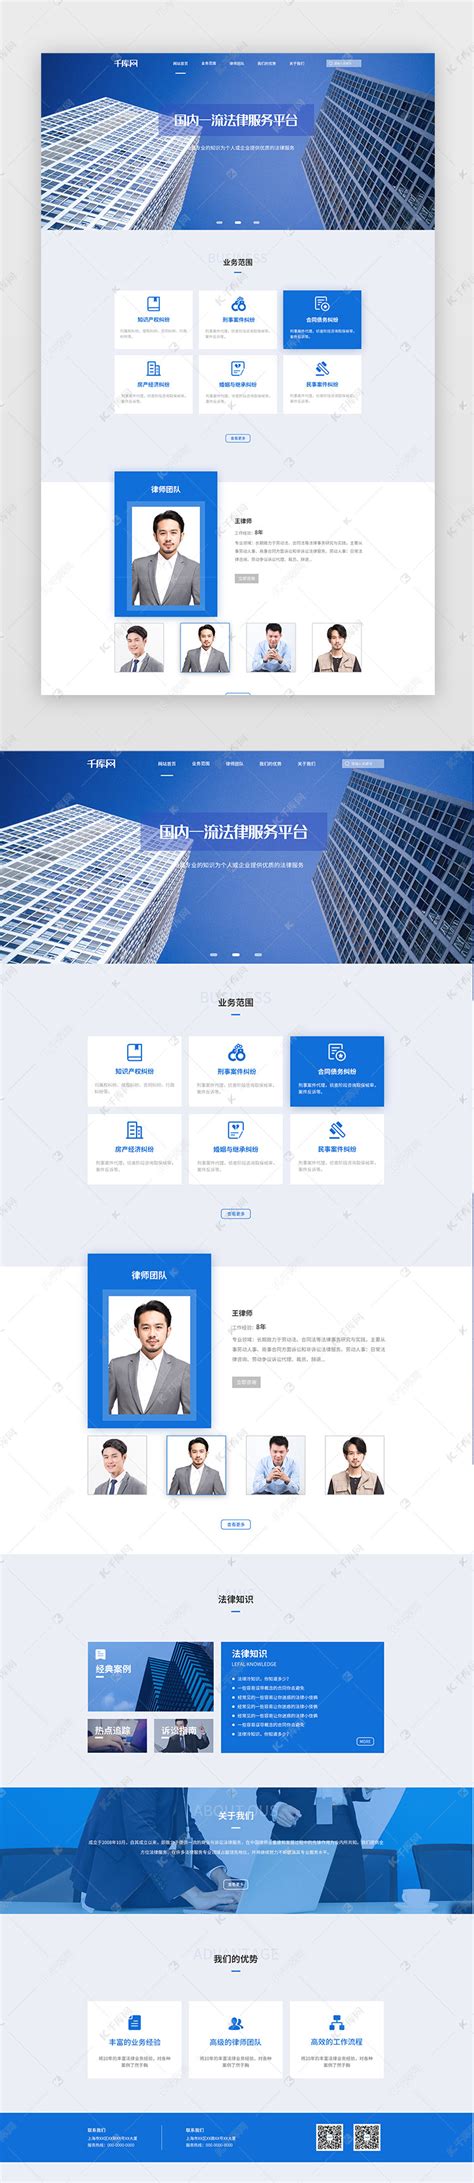 法律服务公司蓝色商务PC端模板ui界面设计素材-千库网